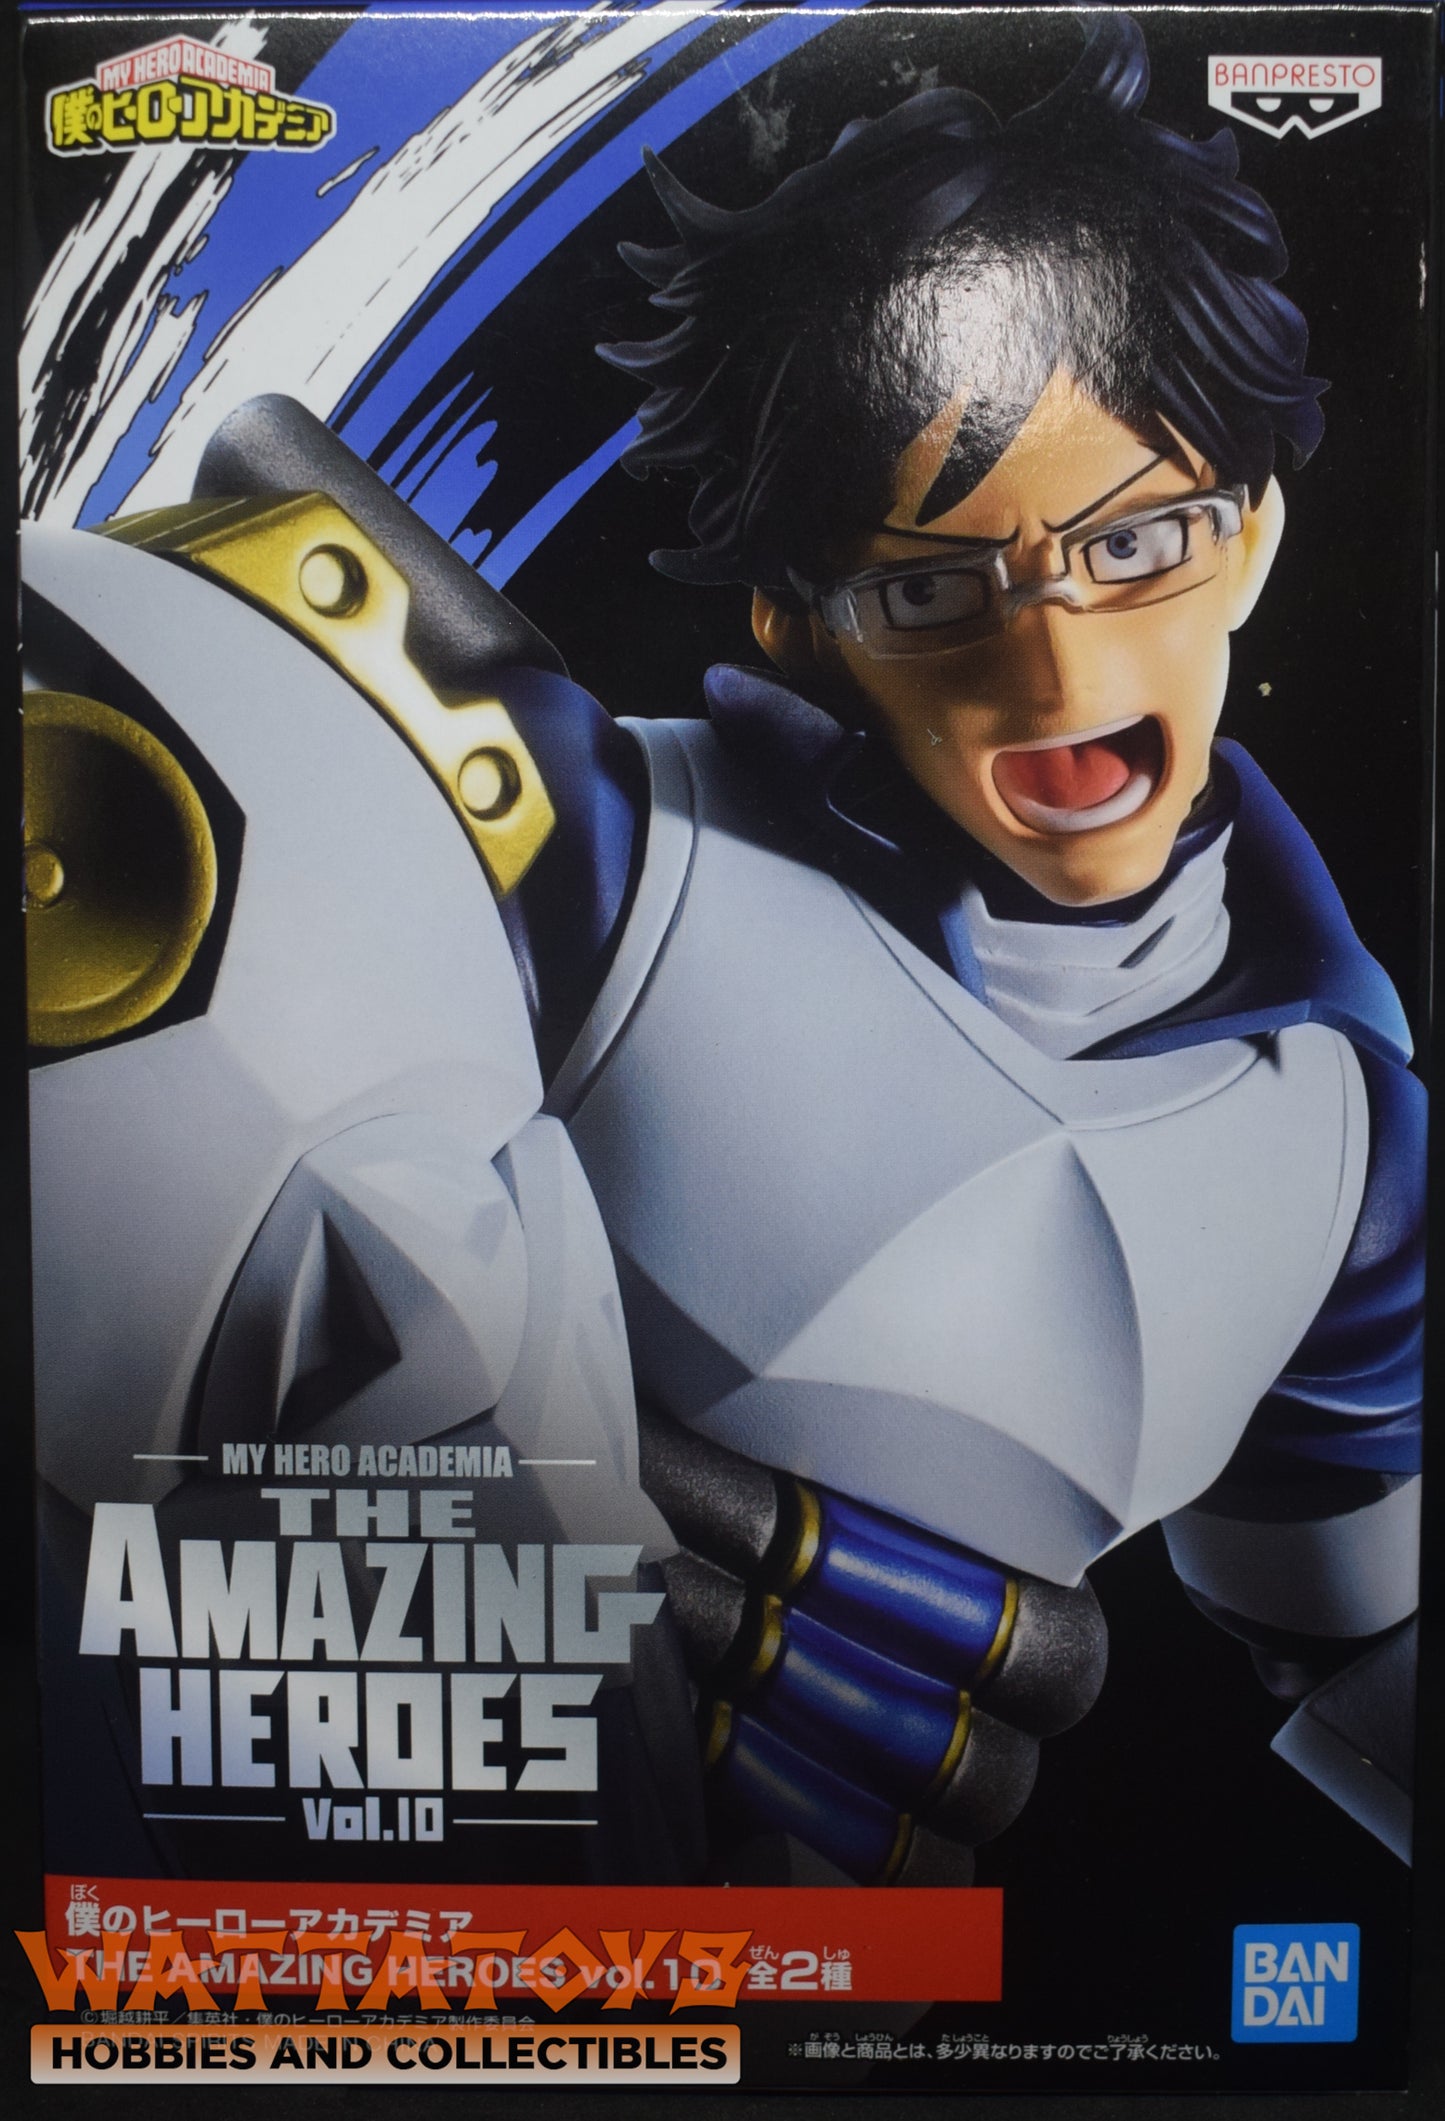 My Hero Academia The Amazing Heroes Vol. 10: Iida Tenya